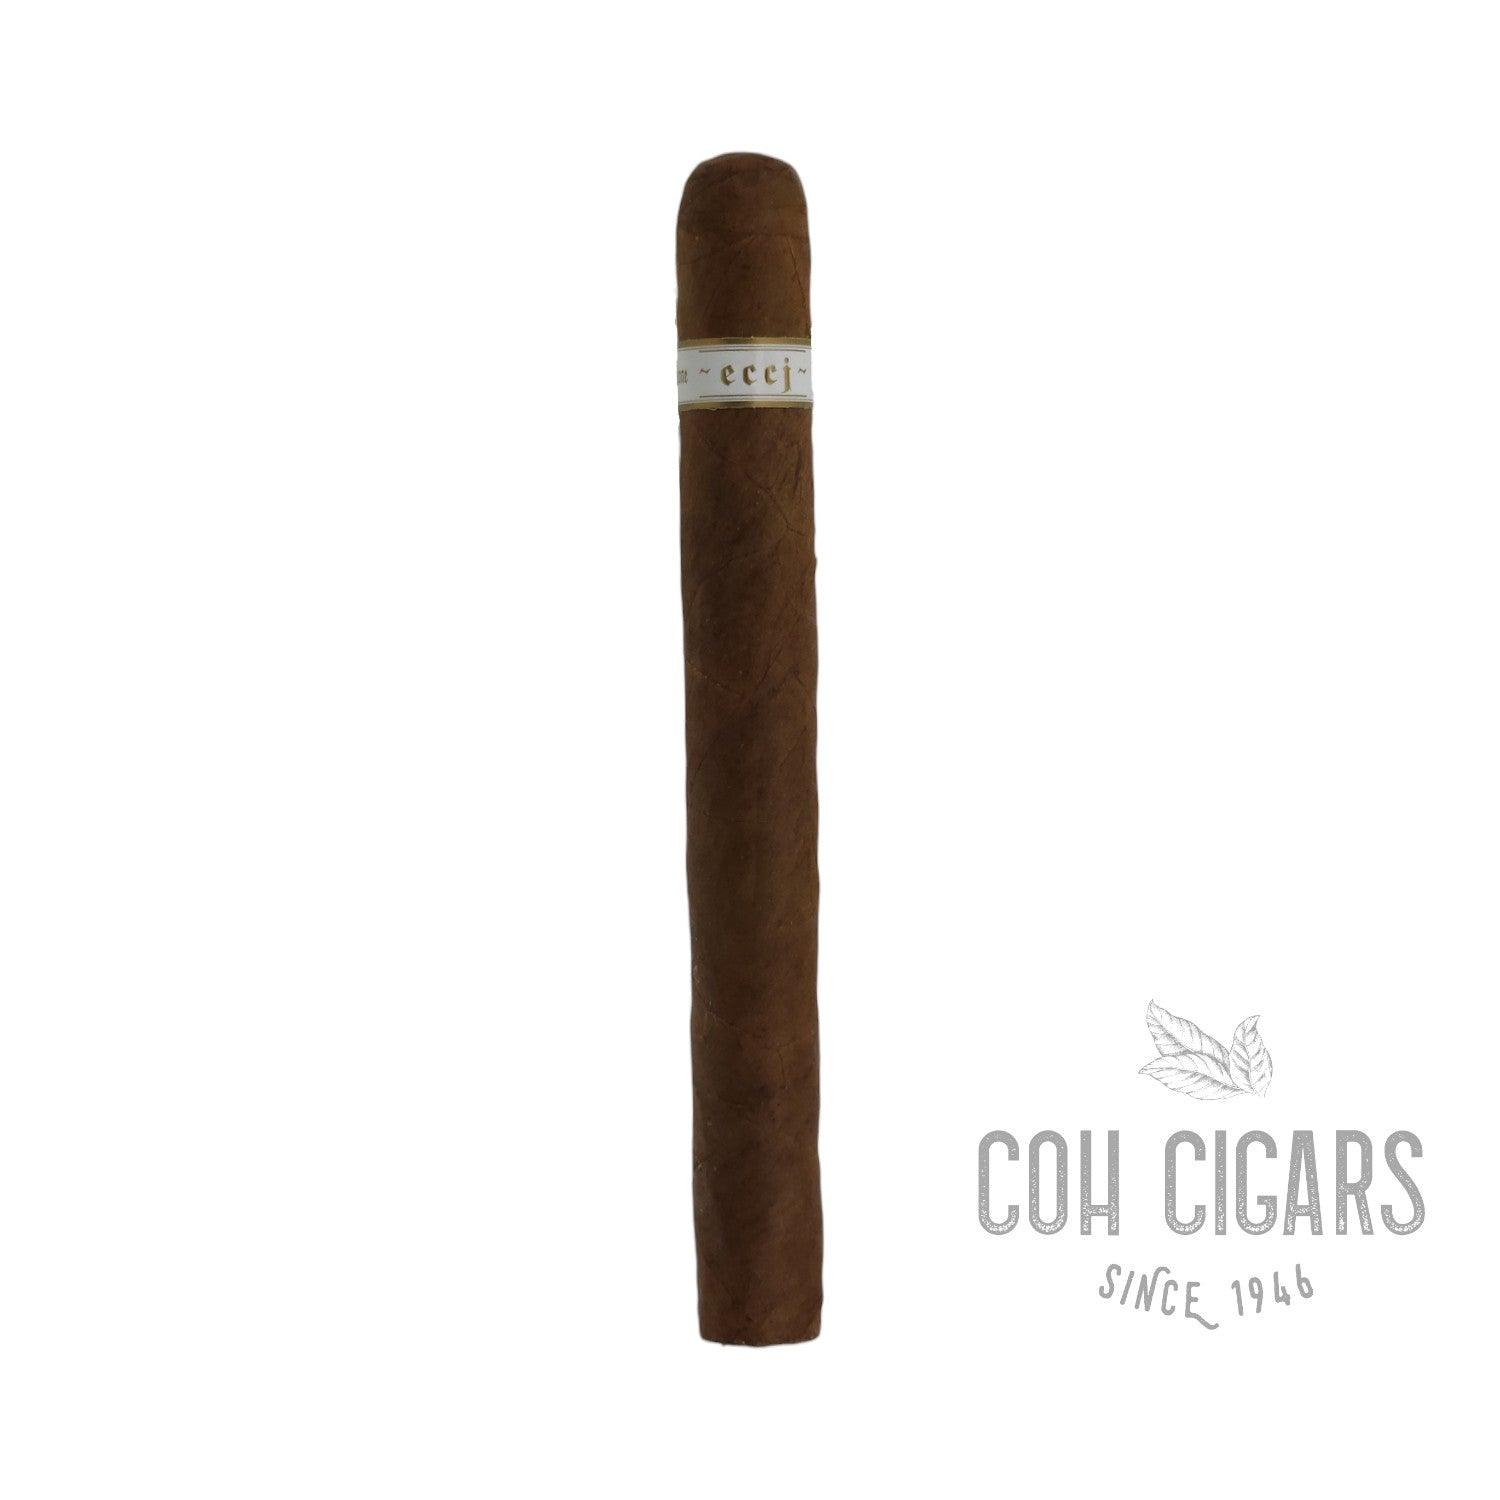 illusione Cigar | ECCJ 20th | Box 15 - HK CohCigars